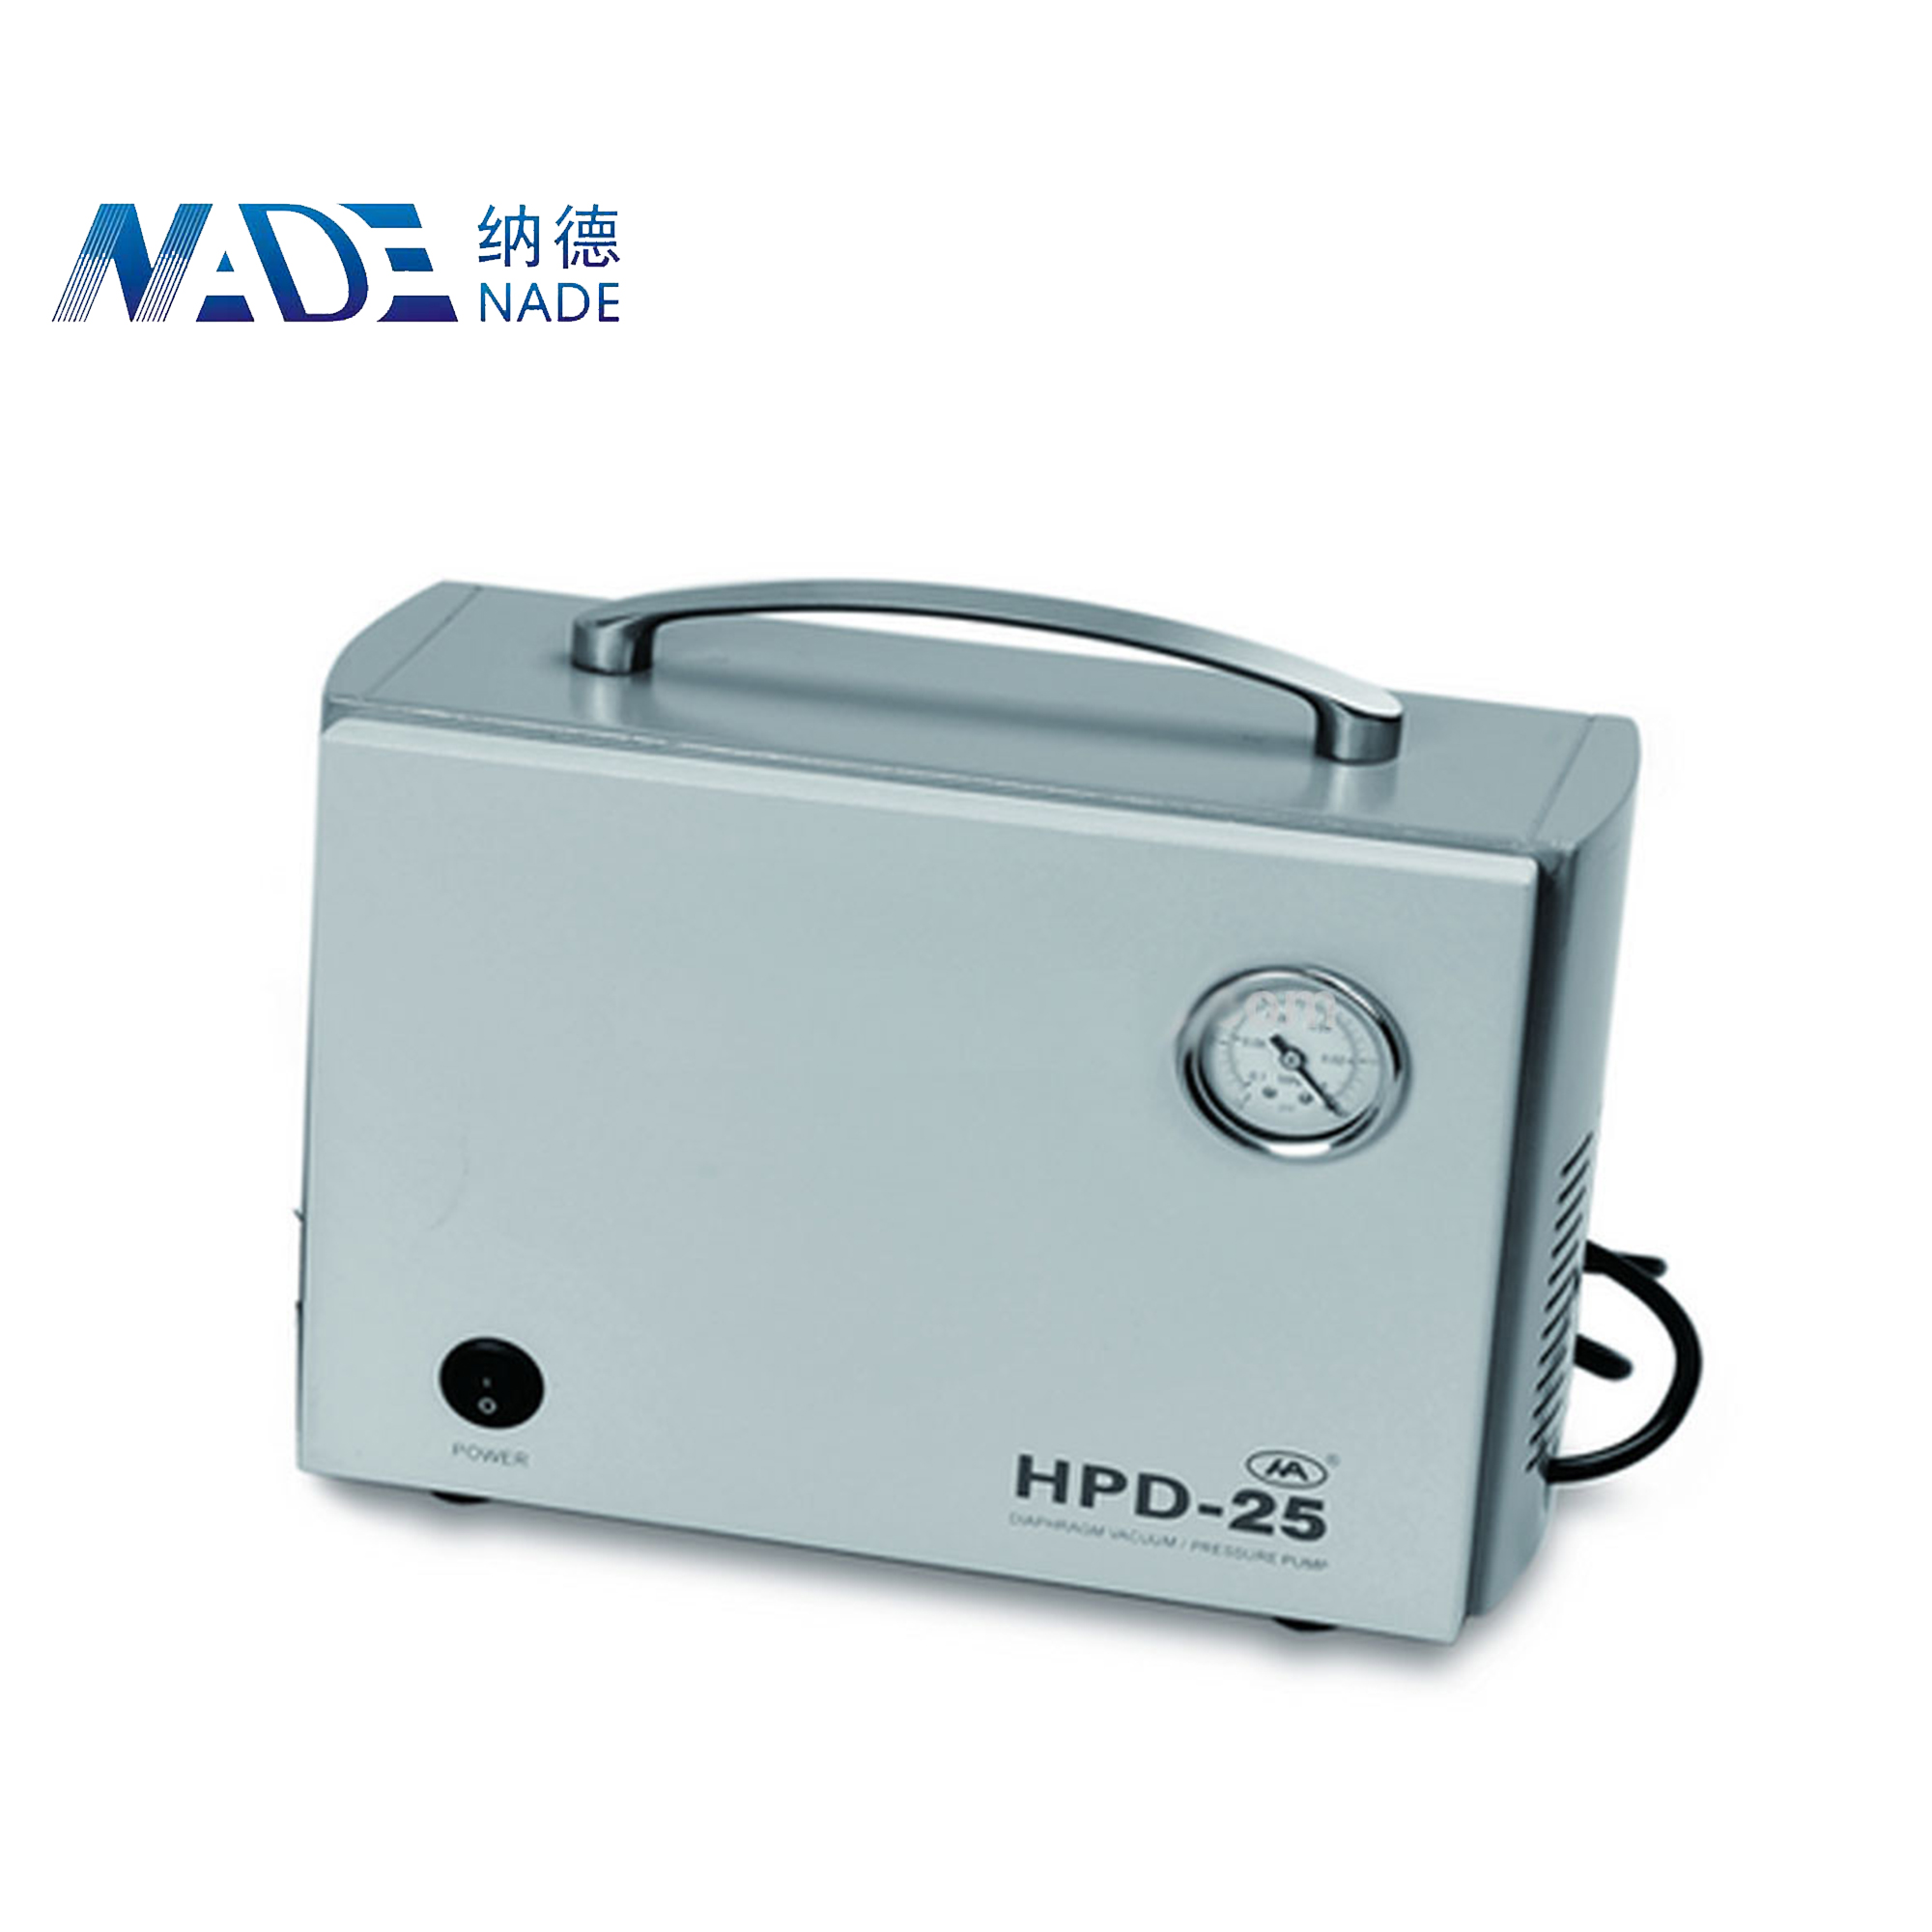 Nade mini electric vacuum pump Oilless diaphragm vaccum pump HPD-25 25L/min